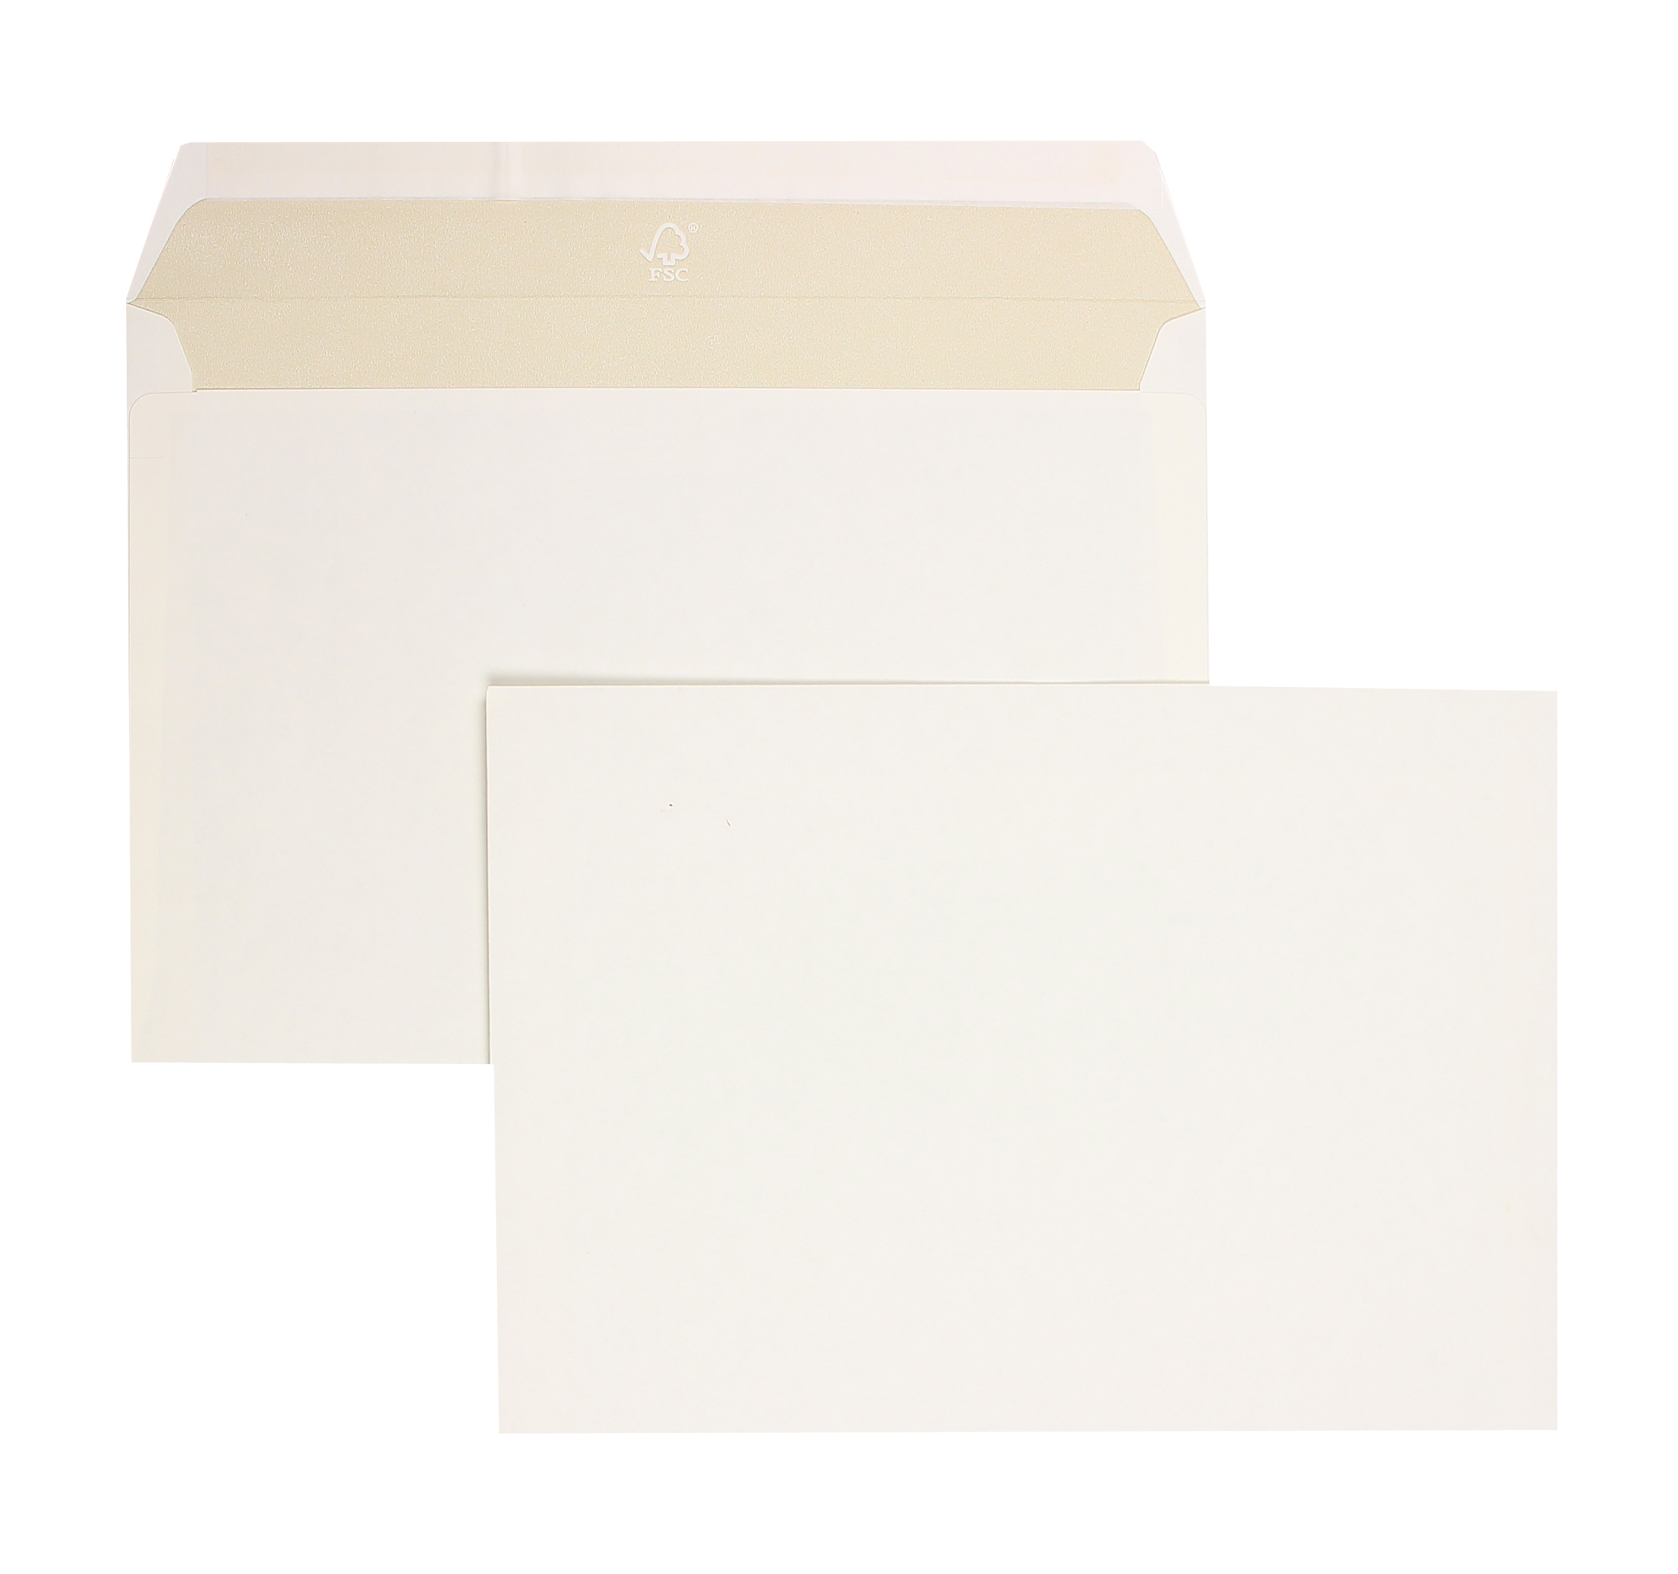 Briefumschläge weiß gelblichweiß~162x229mm DIN C5 120g/qm Munken Pure ohne Fenster Haftklebung gerade Klappe 500 Stk.